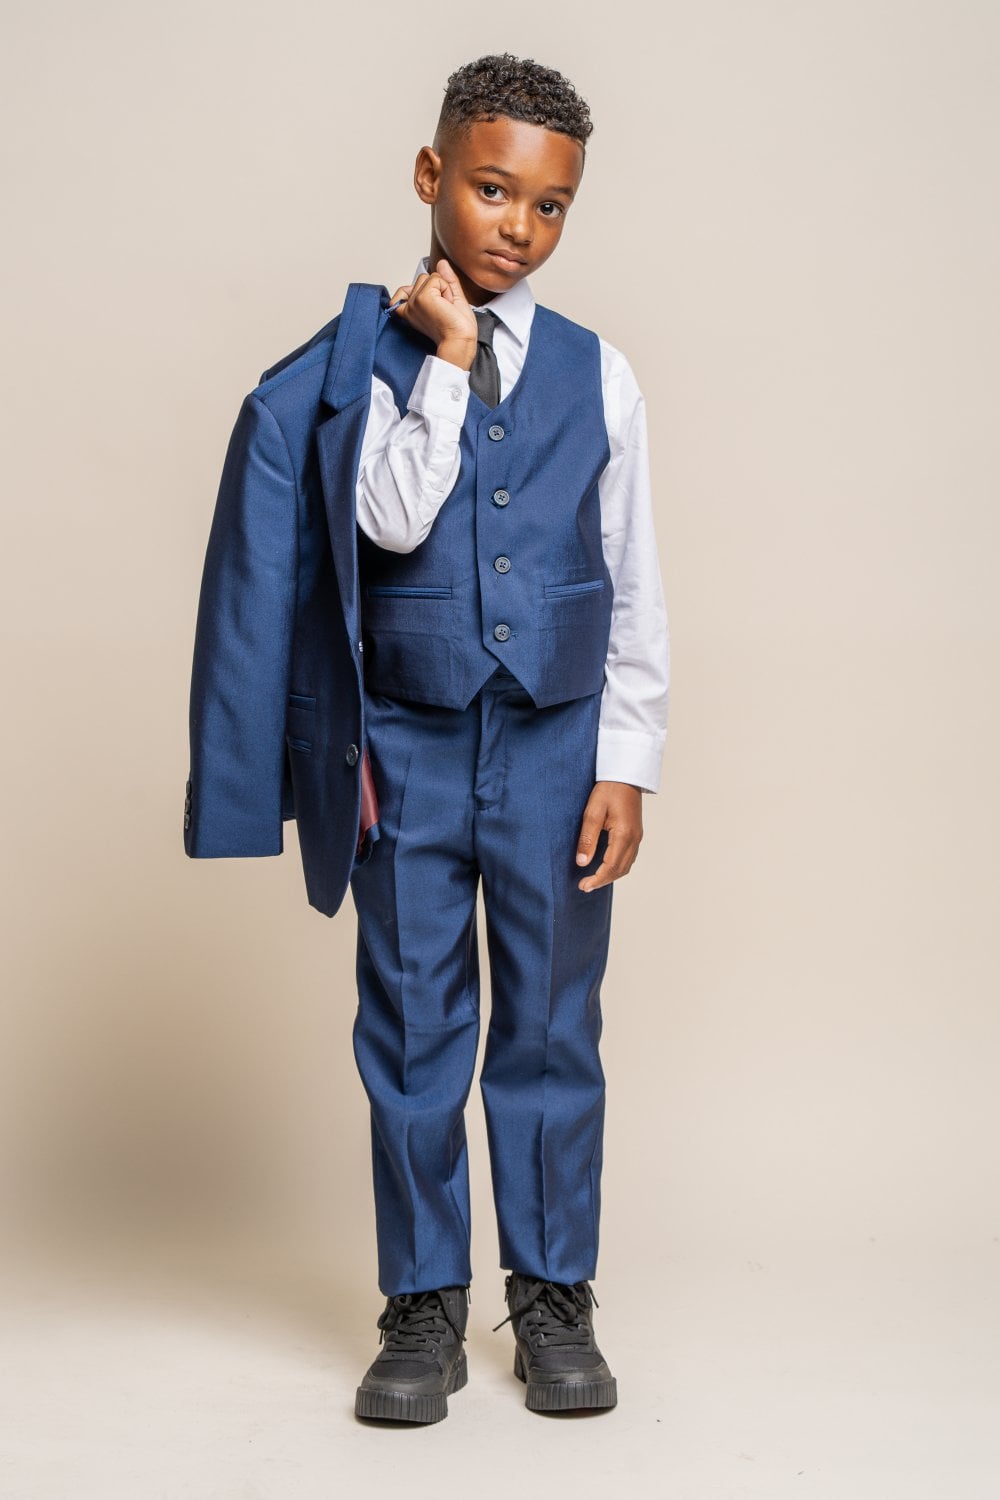 Cavani Boys Ford Blue 3 Piece Formal Suit | SuitsMe